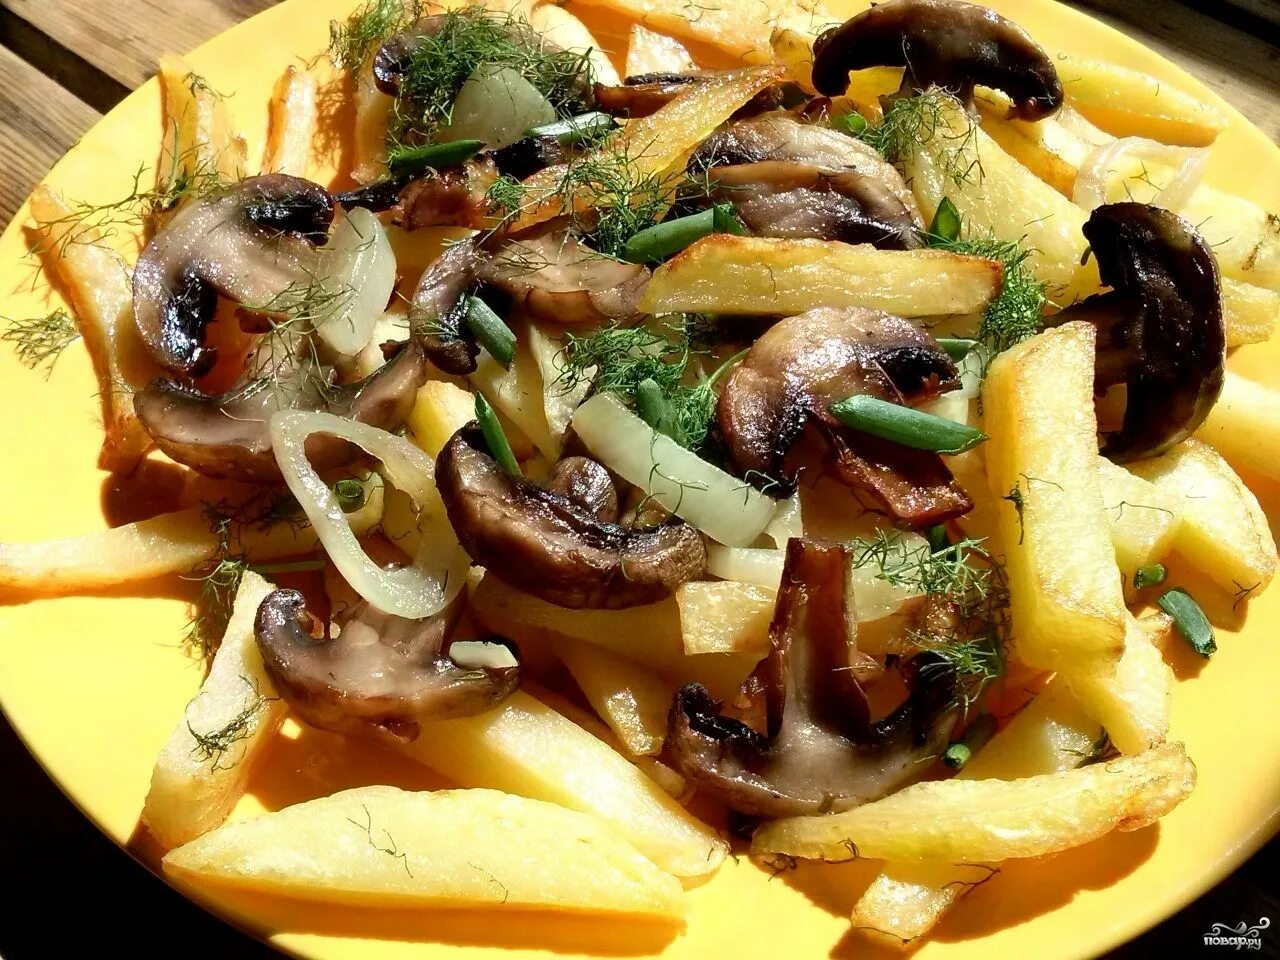 Жареная картошка с грибами. Жареная картошка с шампиньонами. Картофель с грибами и луком. Картошка жареная с грибами шампиньонами. Картошка с замороженными шампиньонами